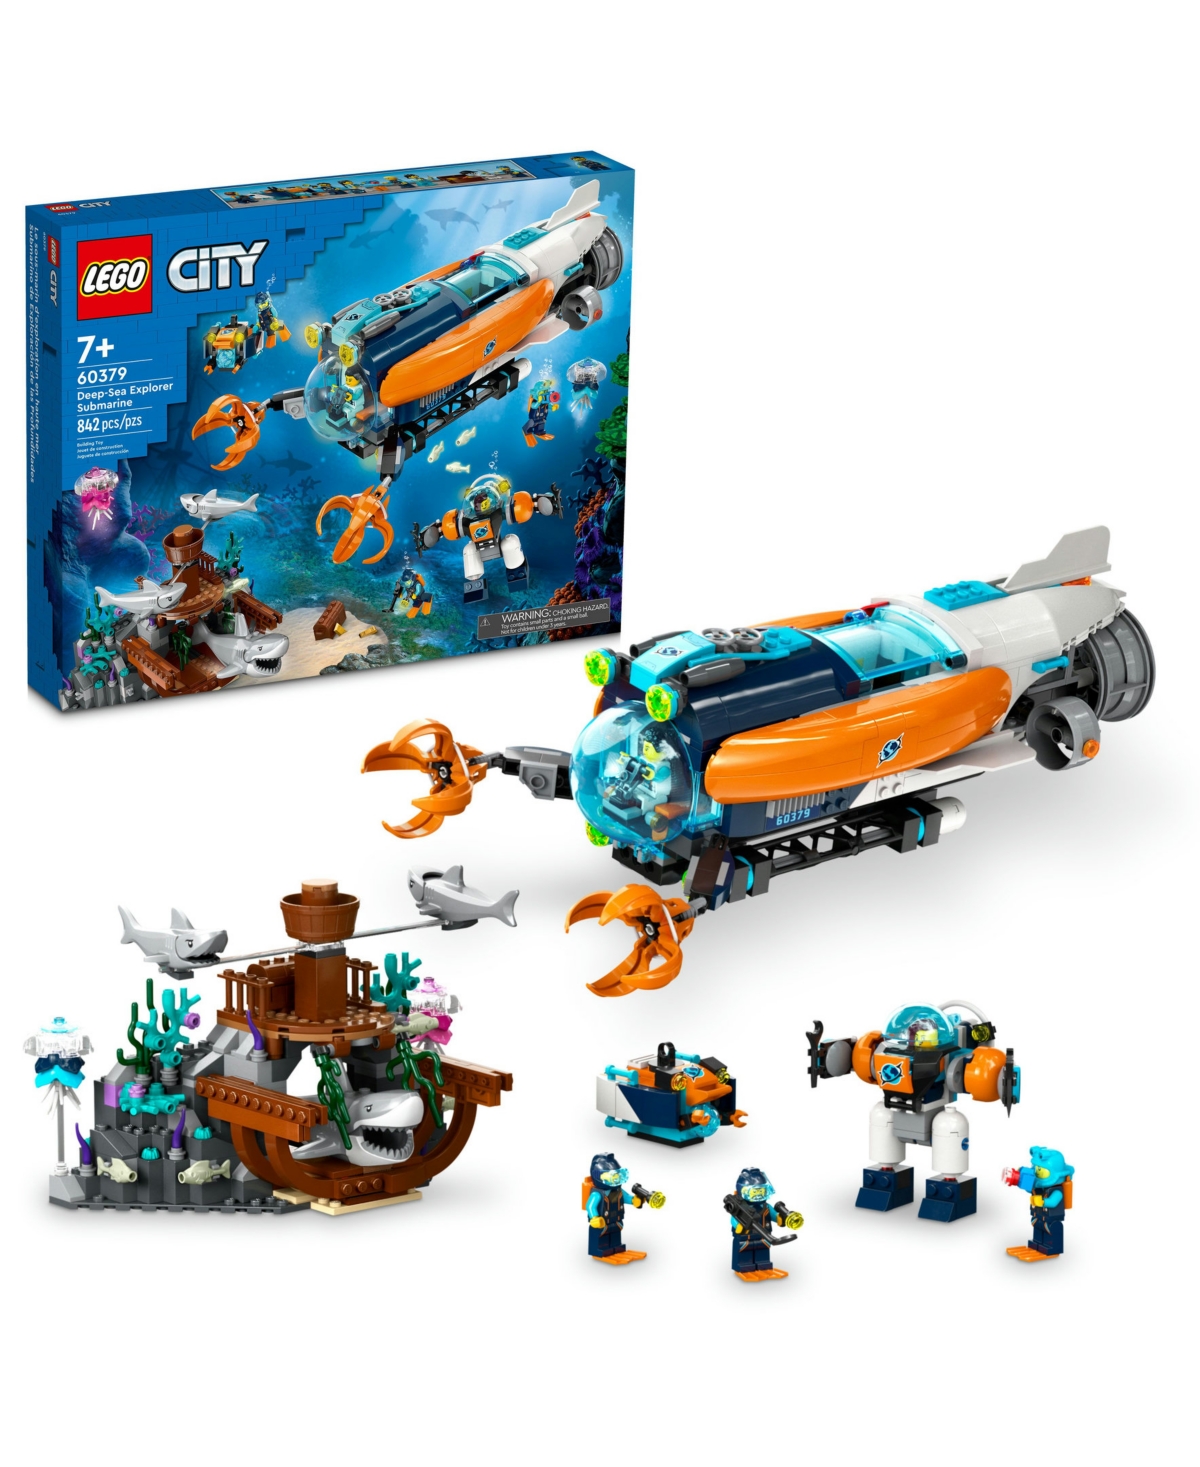 Lego City 60379 Deep-sea Explorer Toy Submarine Building Set In Multicolor